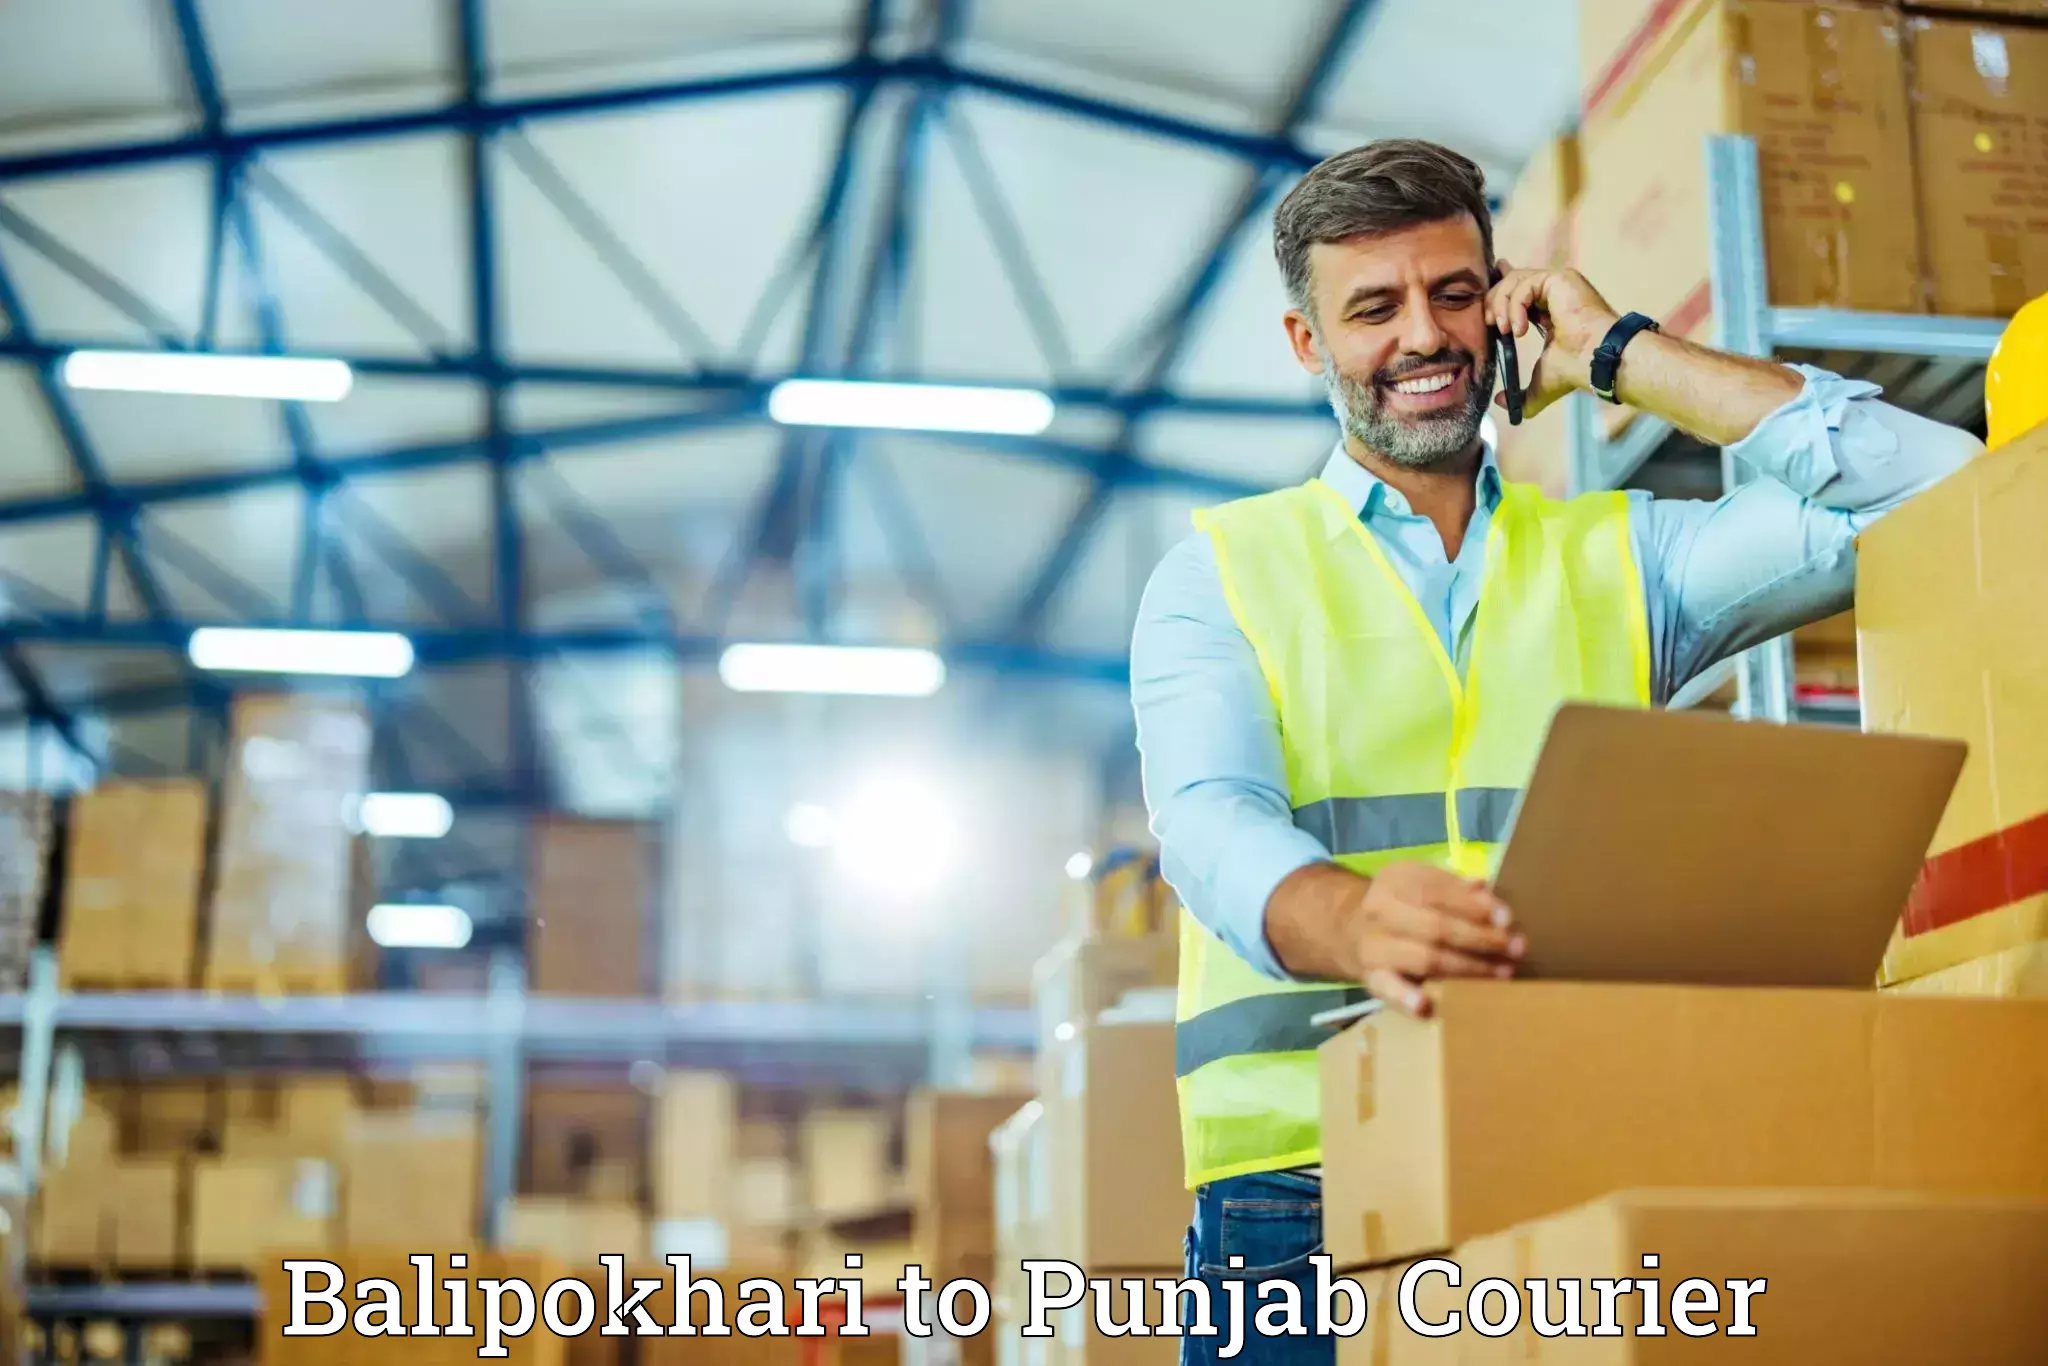 Furniture transport company Balipokhari to Punjab